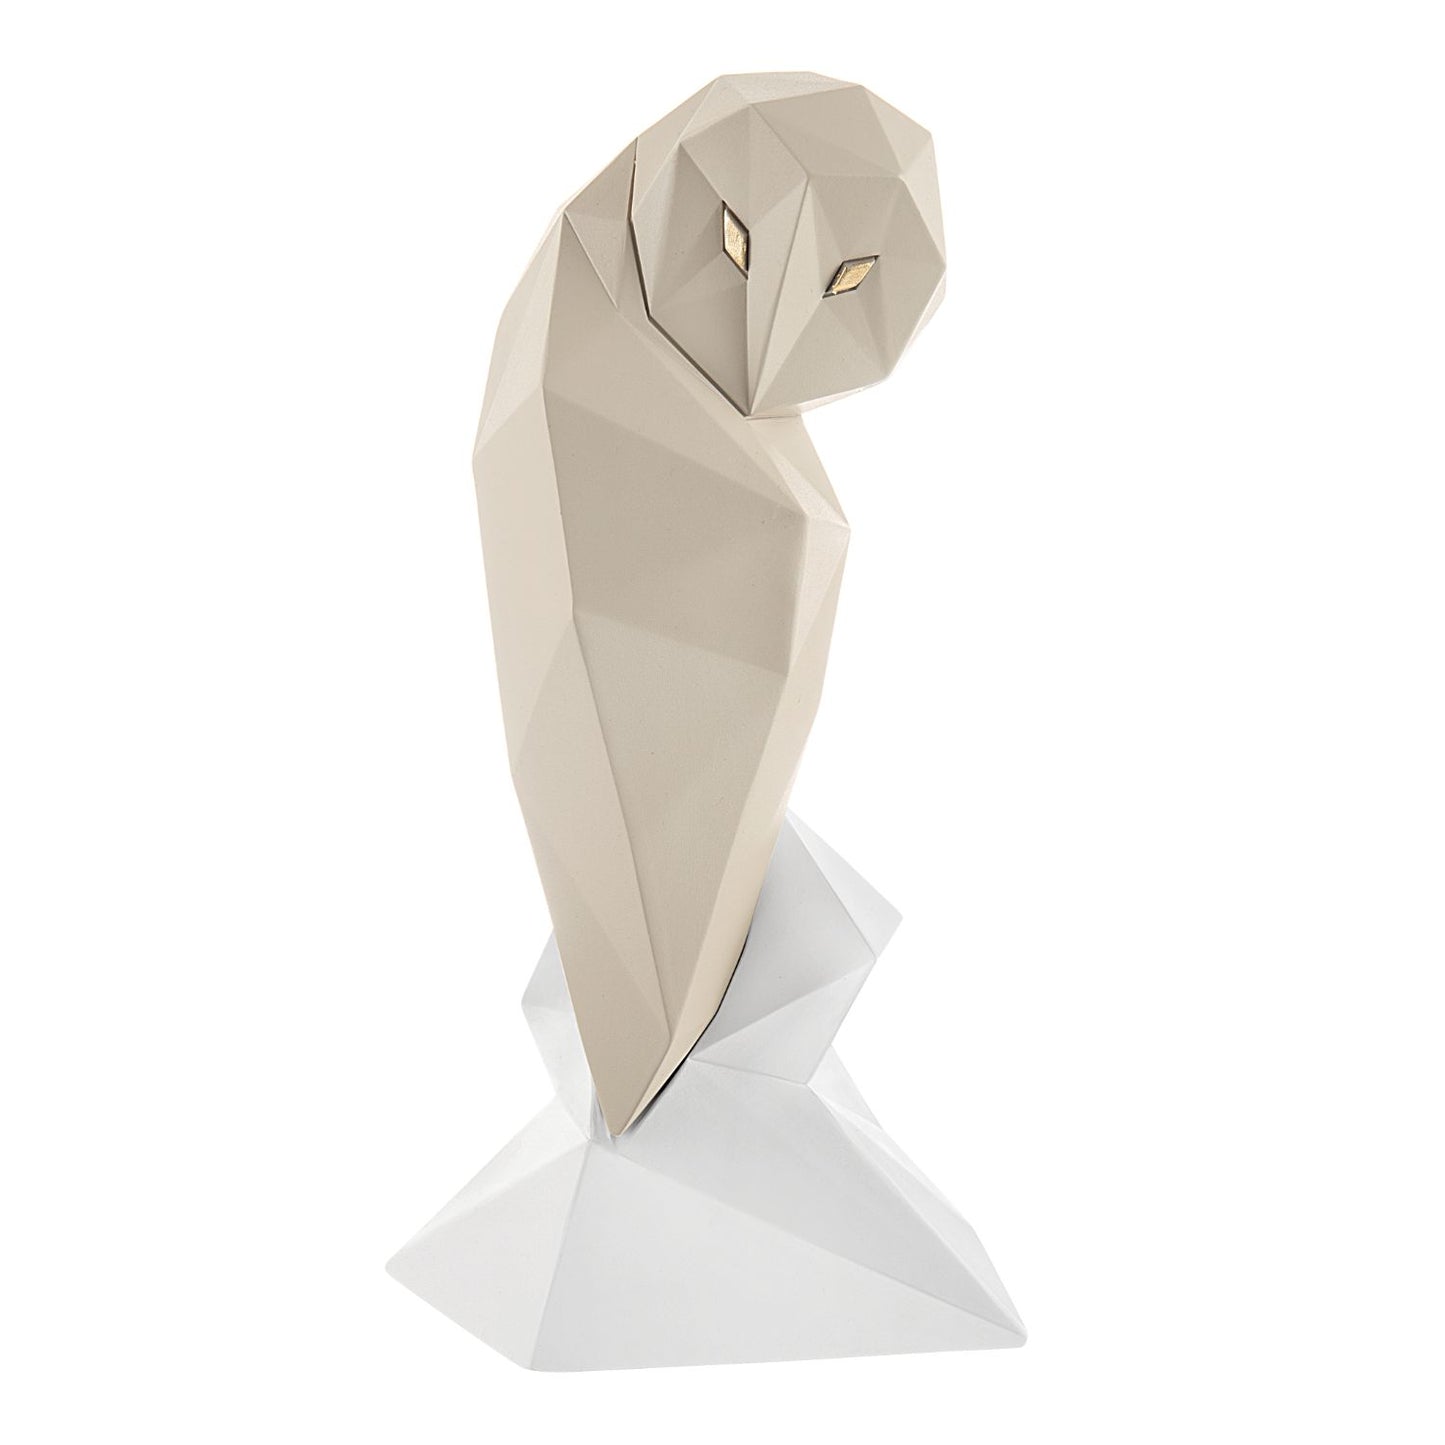 BONGELLI PREZIOSI Figura Statua Moderna Gufo Stilizzato 29cm Nocciola Marmorino